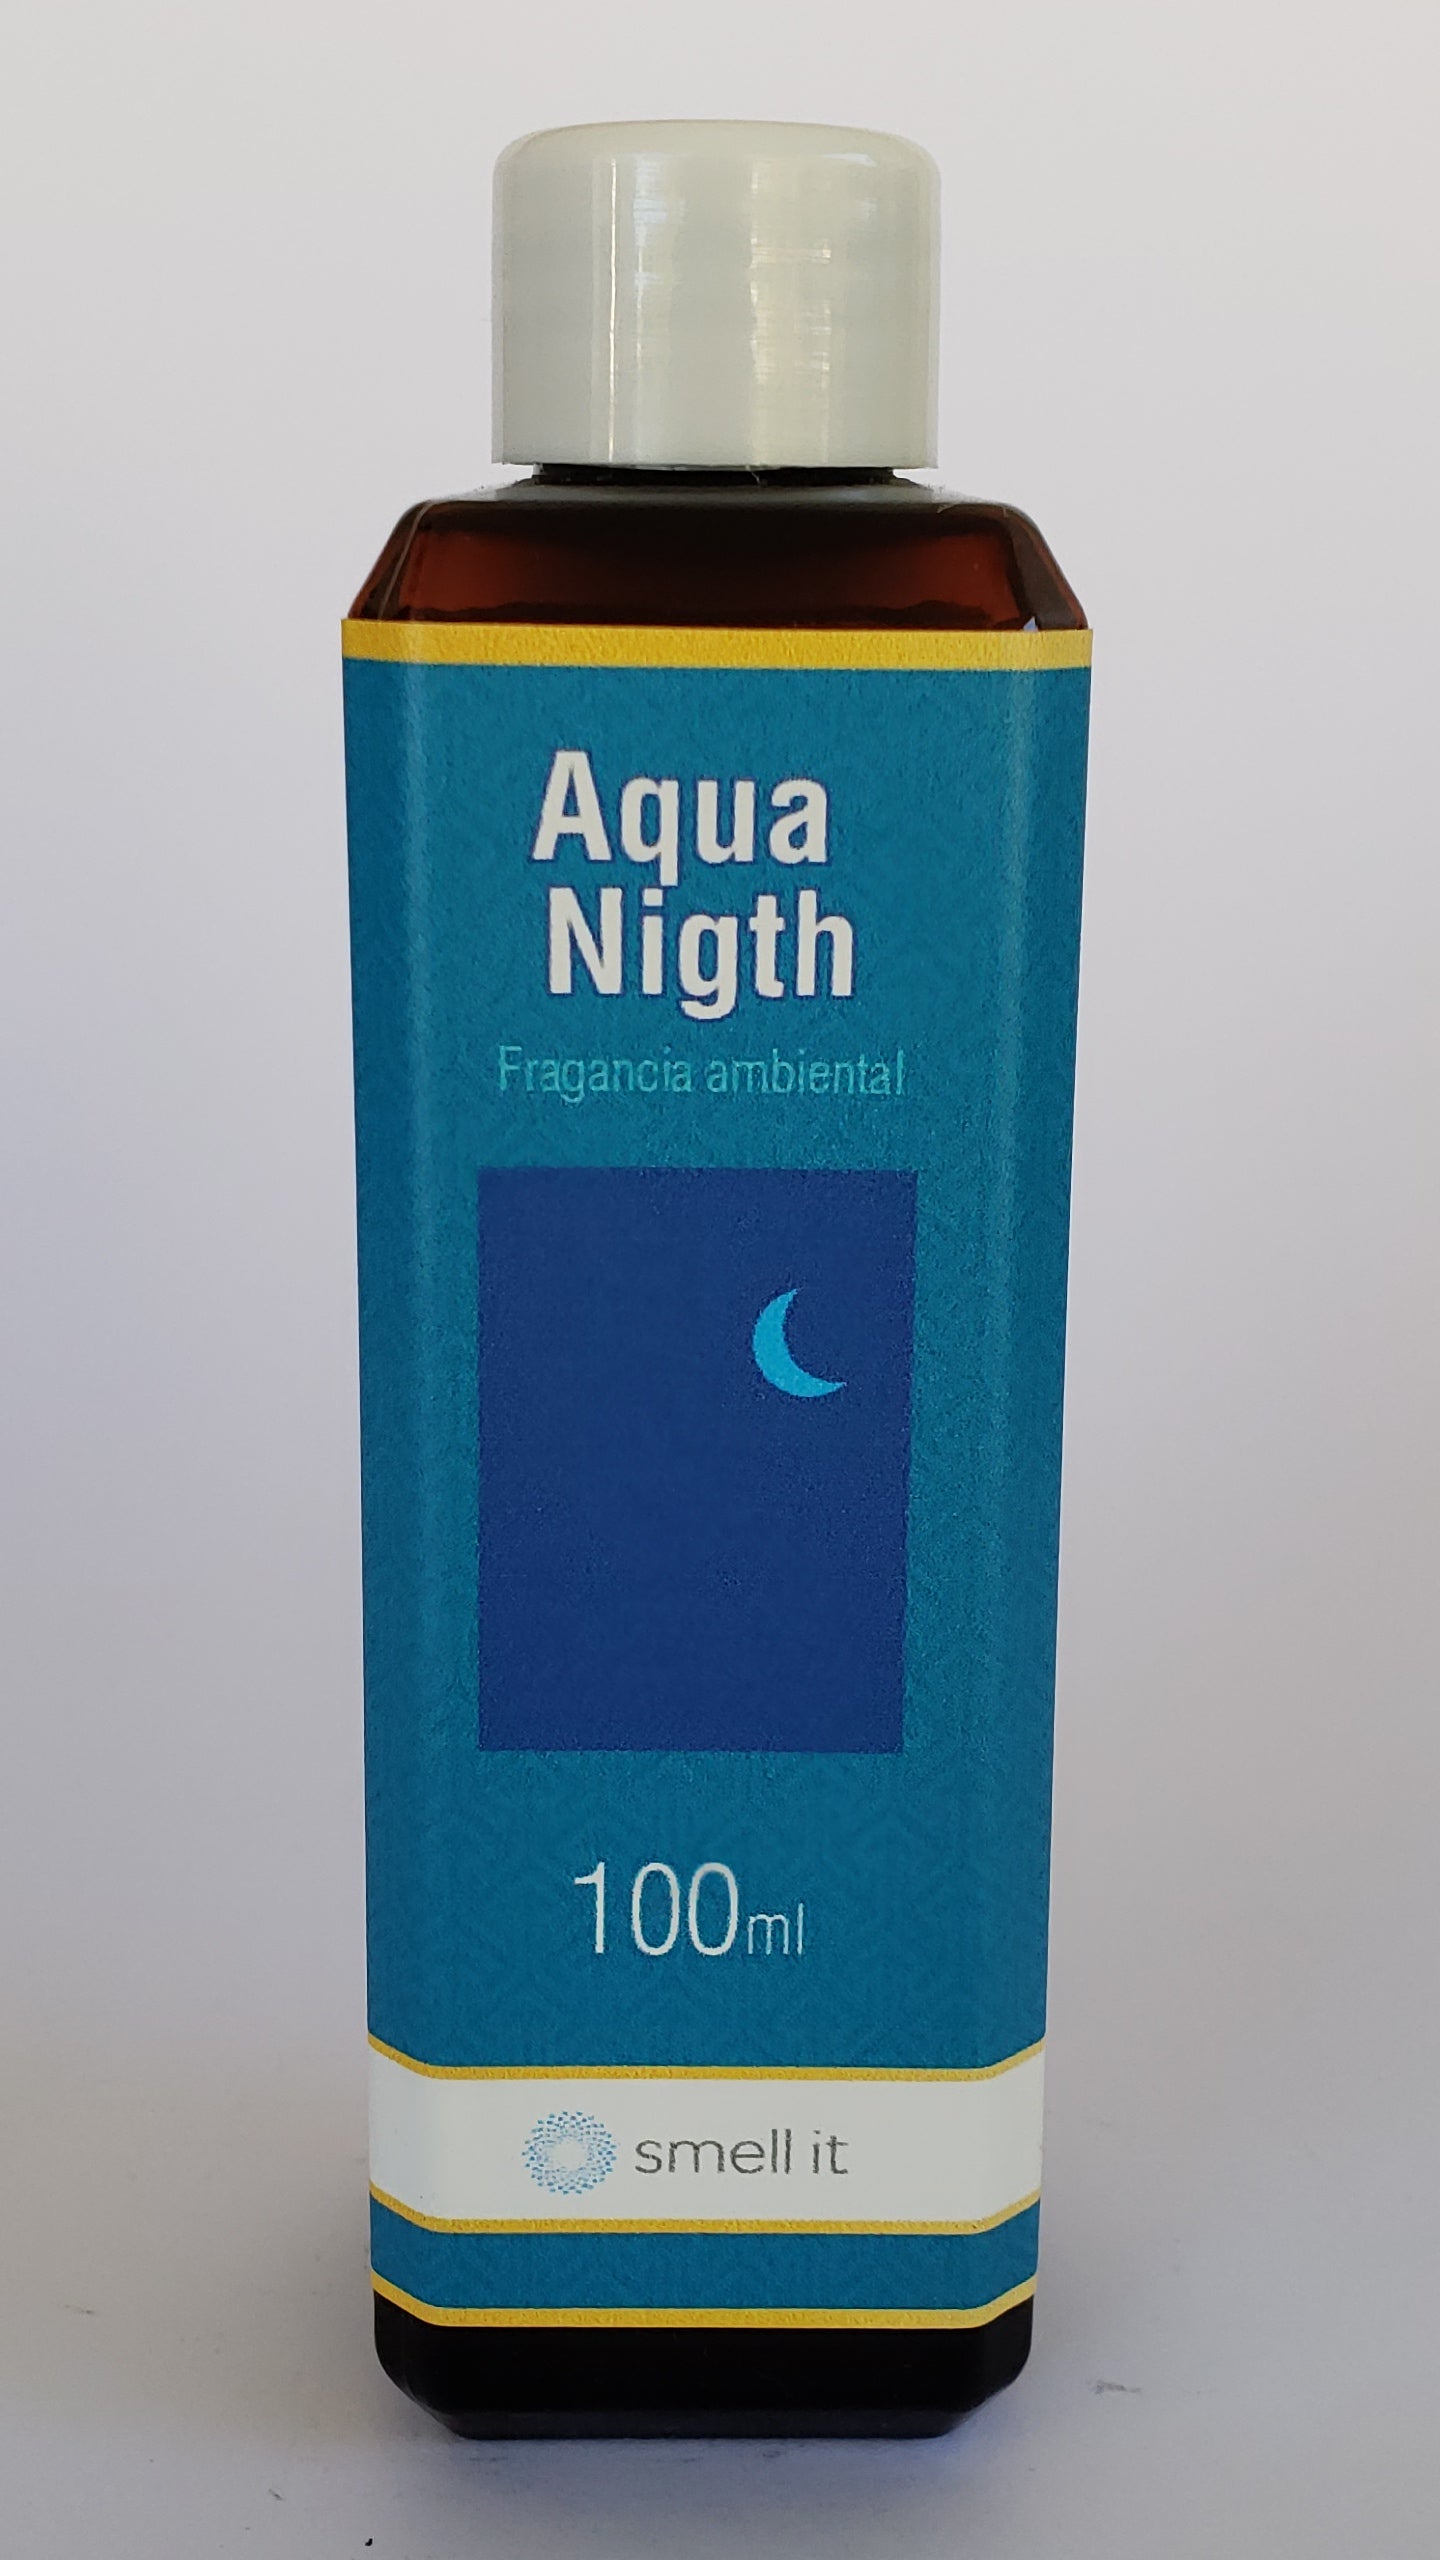 Fragancia Ambiental - Aqua Nigth